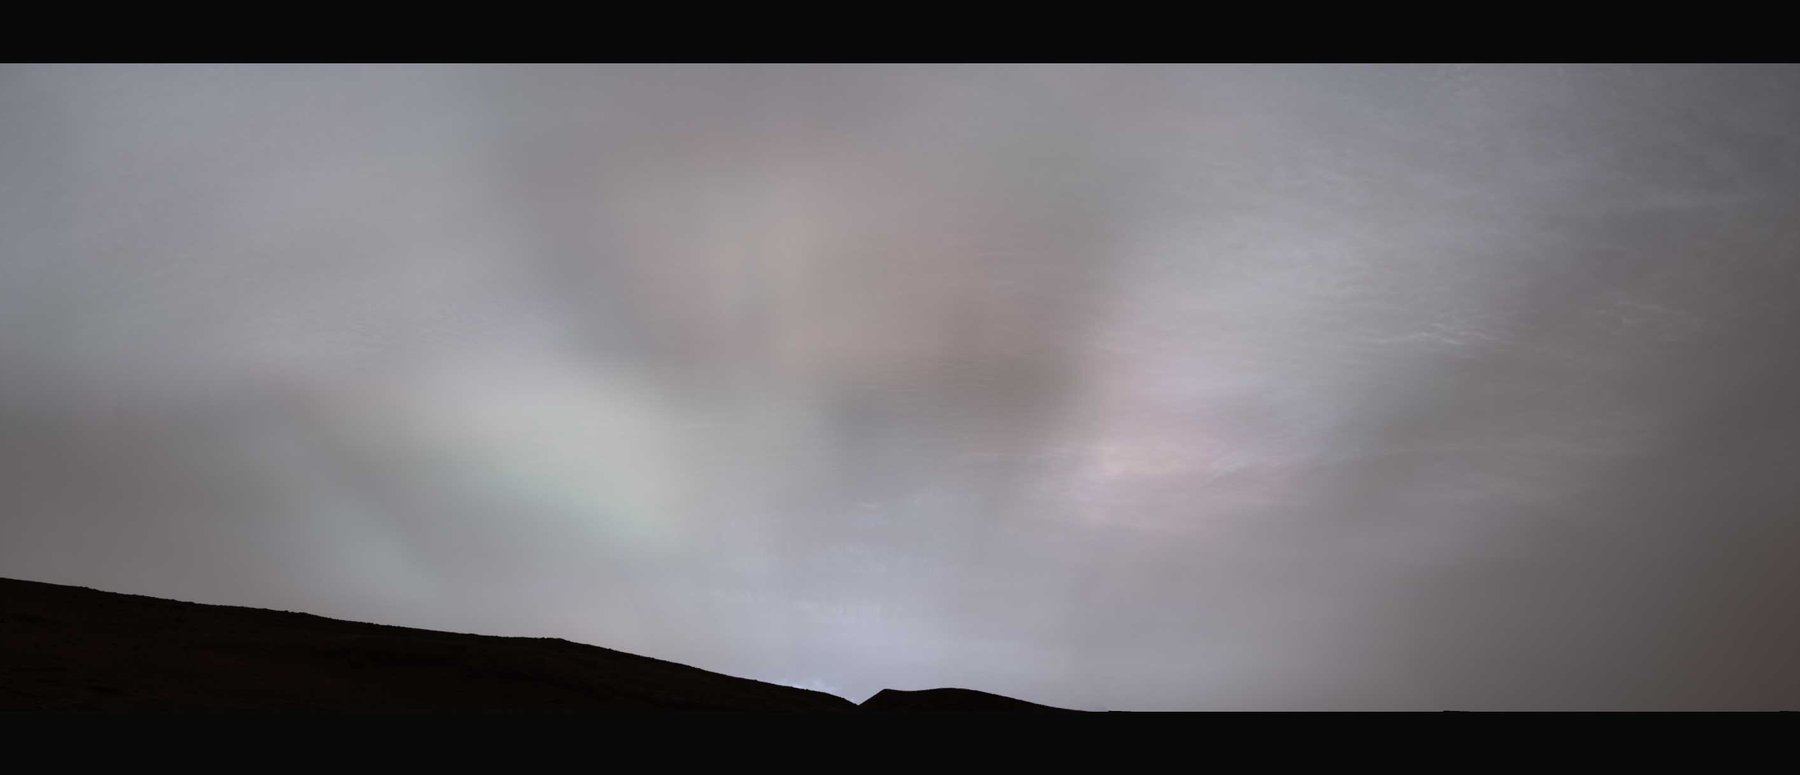 Une sublime image du crépuscule sur Mars capturée par le rover Curiosity